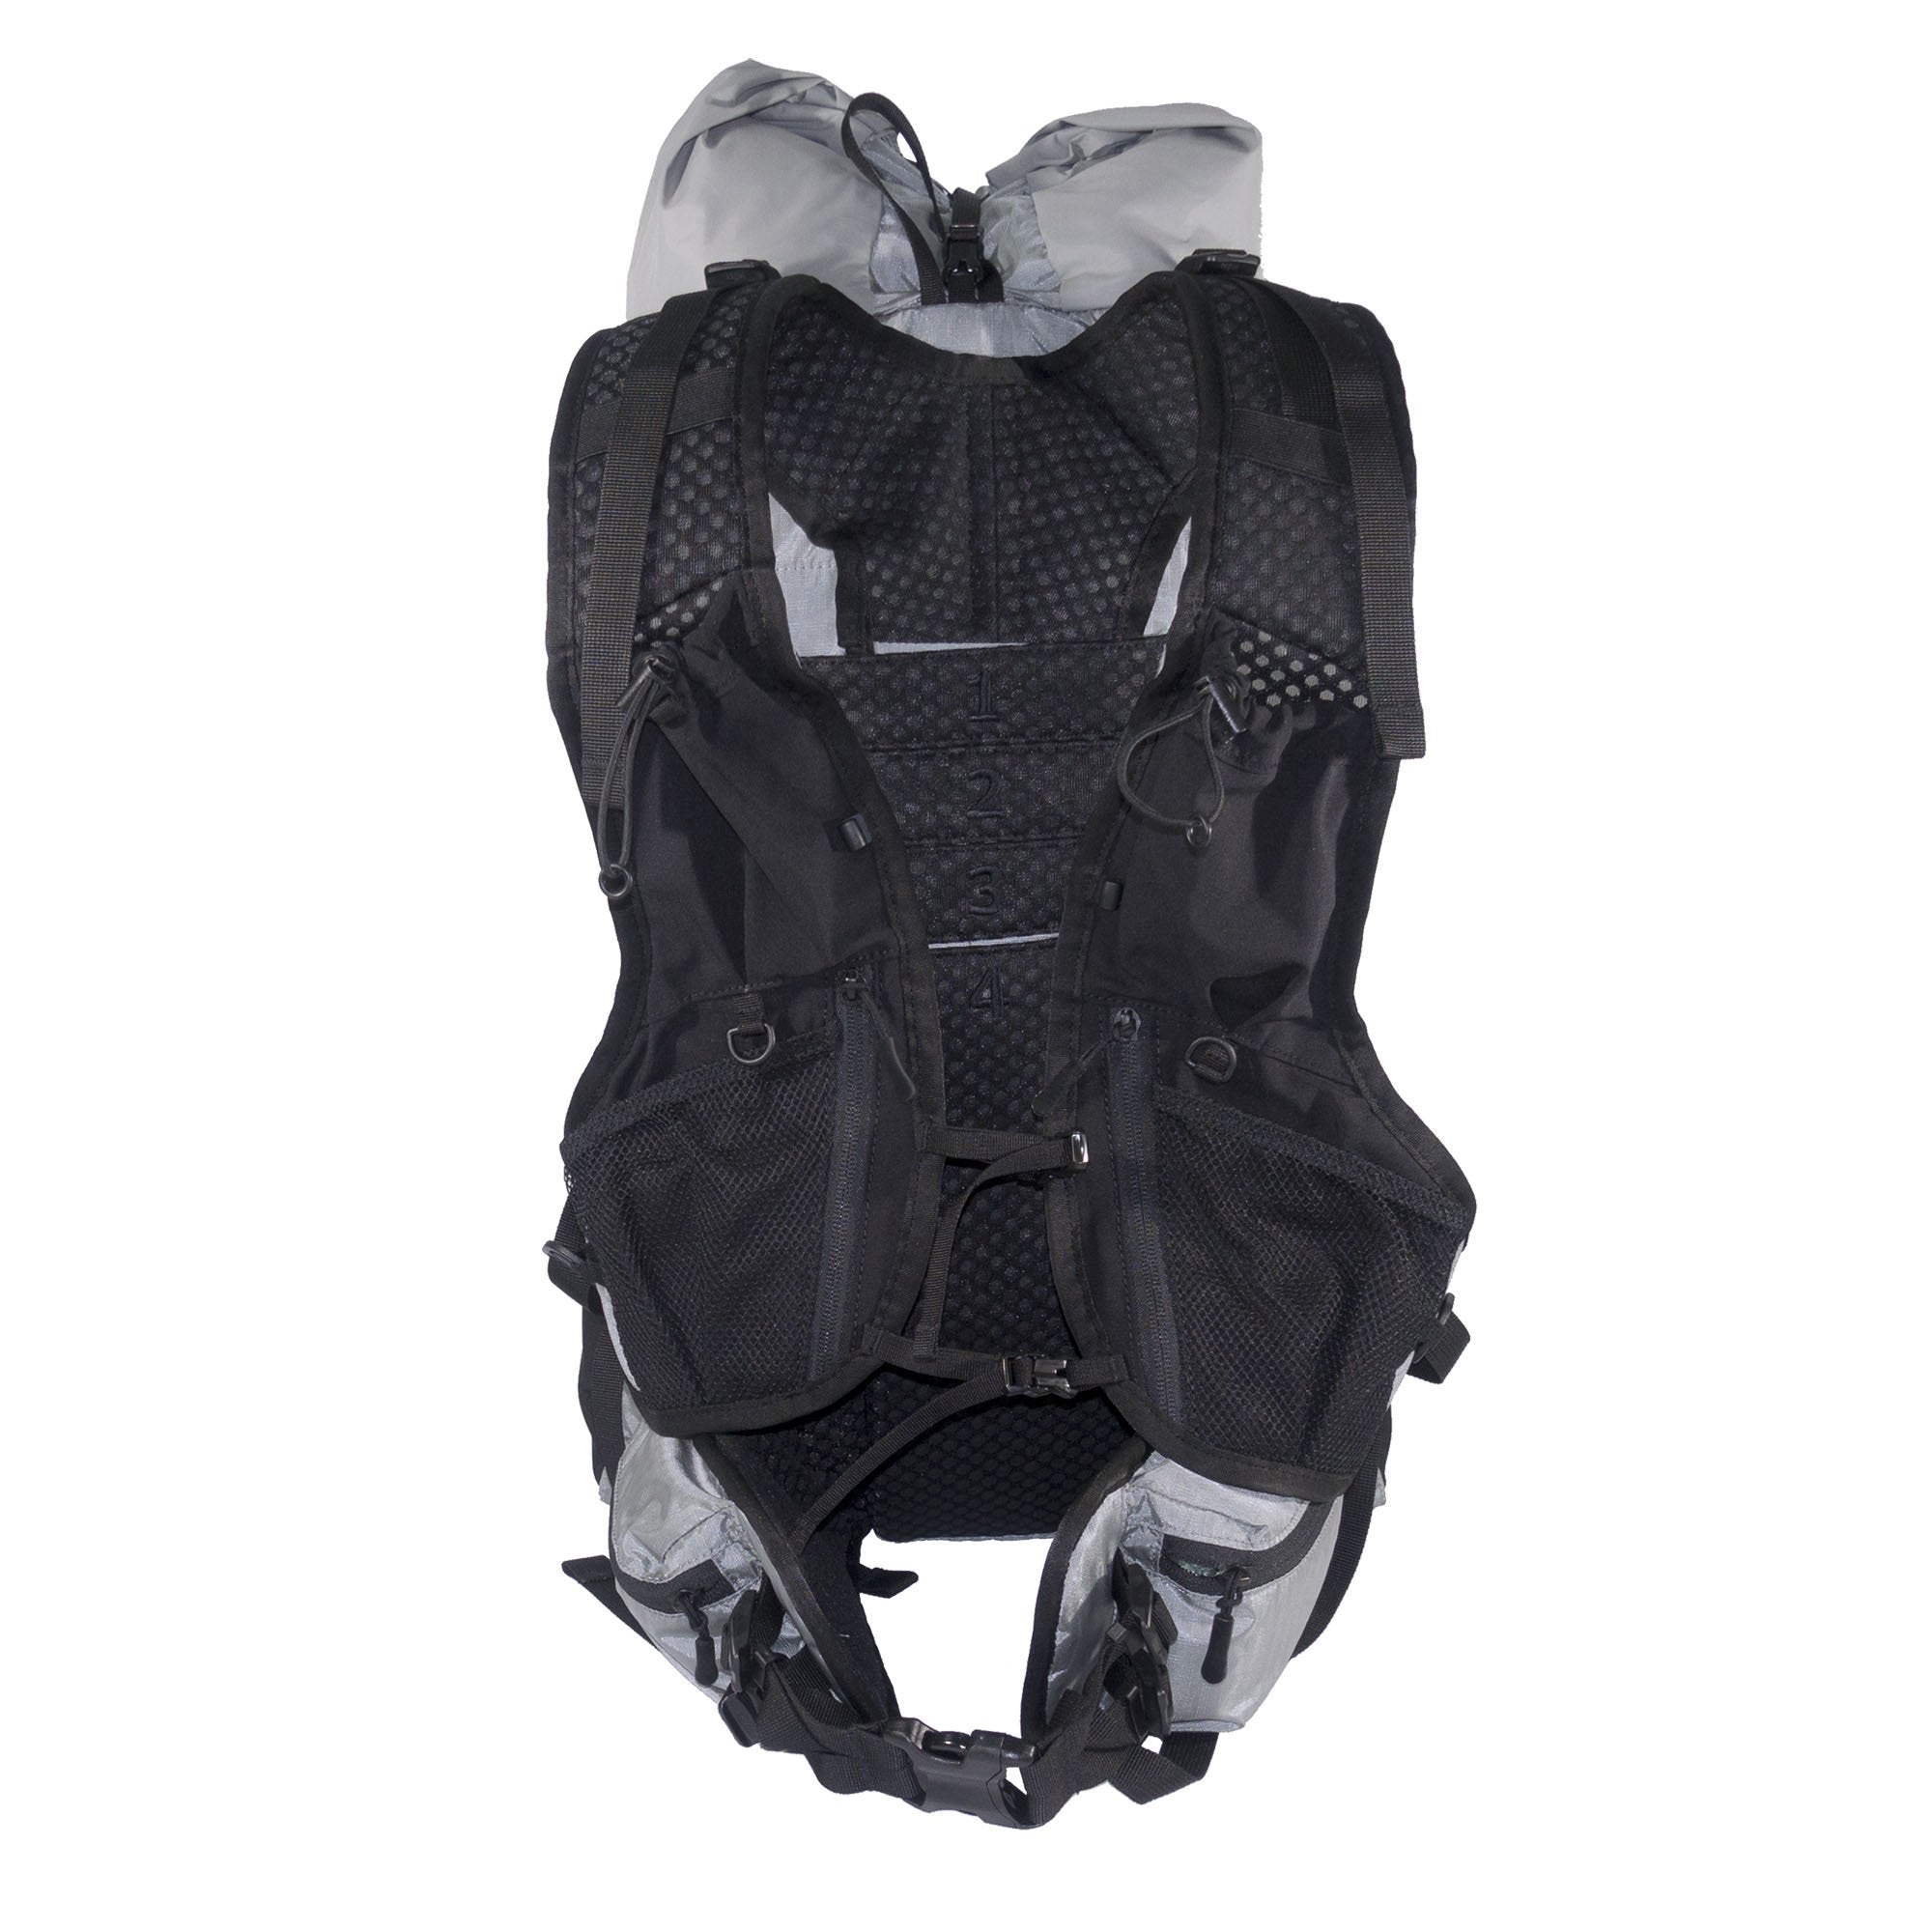 Flight 30 UL Backpack back showing vest yoke and Hip belt